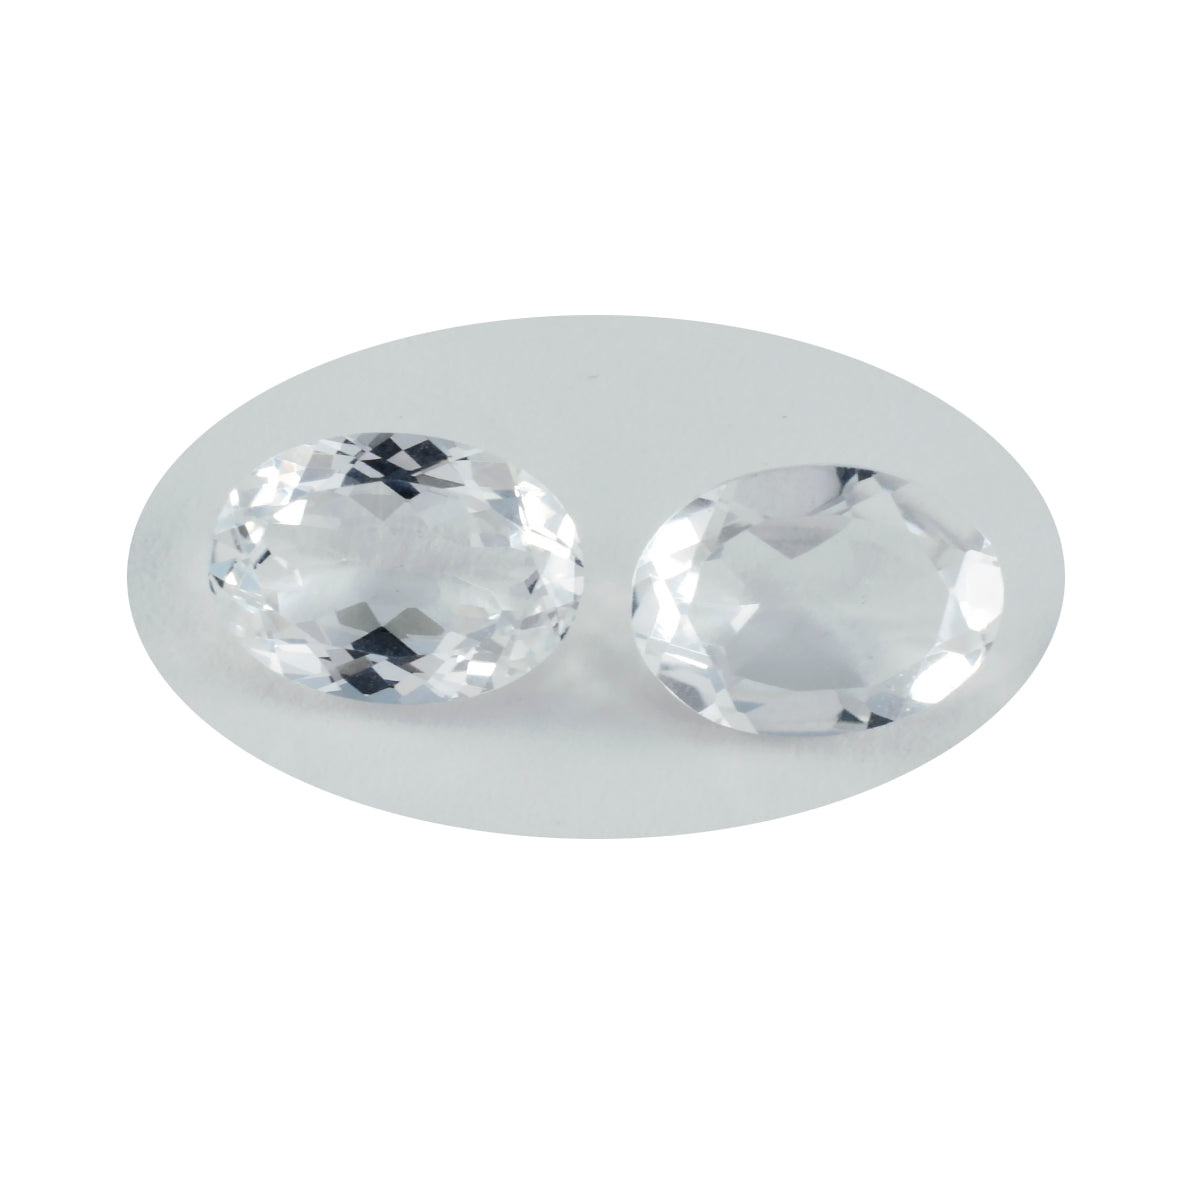 Riyogems 1 Stück weißer Kristallquarz, facettiert, 10 x 12 mm, ovale Form, hübsche, hochwertige lose Edelsteine